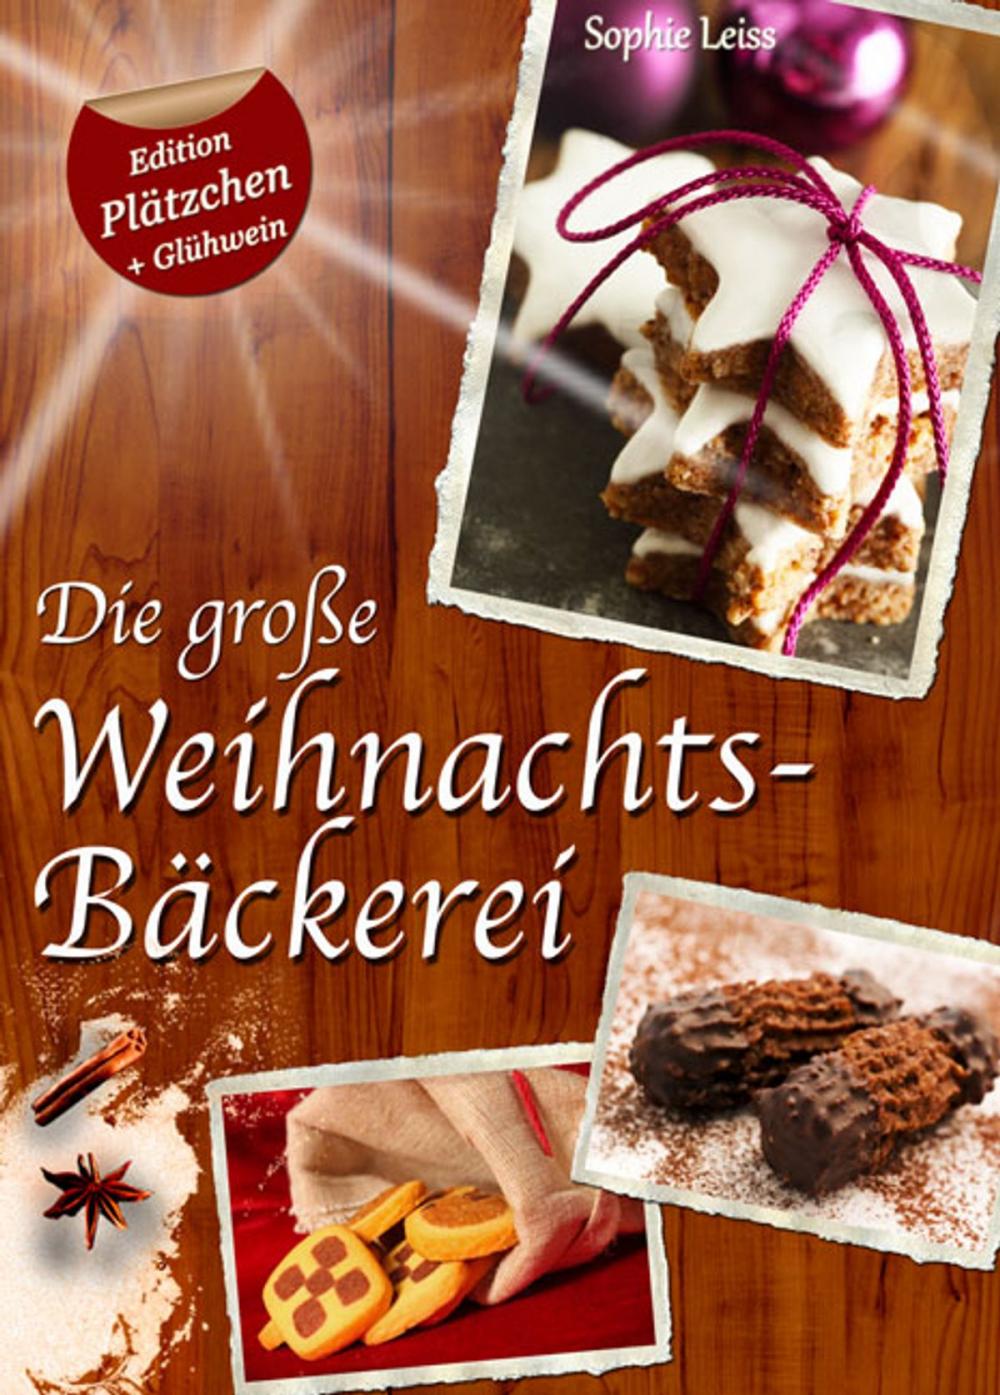 Big bigCover of Die große Weihnachtsbäckerei - Plätzchen, Kekse und Lebkuchen (Deutsche Rezepte Sonder-Edition "Plätzchen + Glühwein")